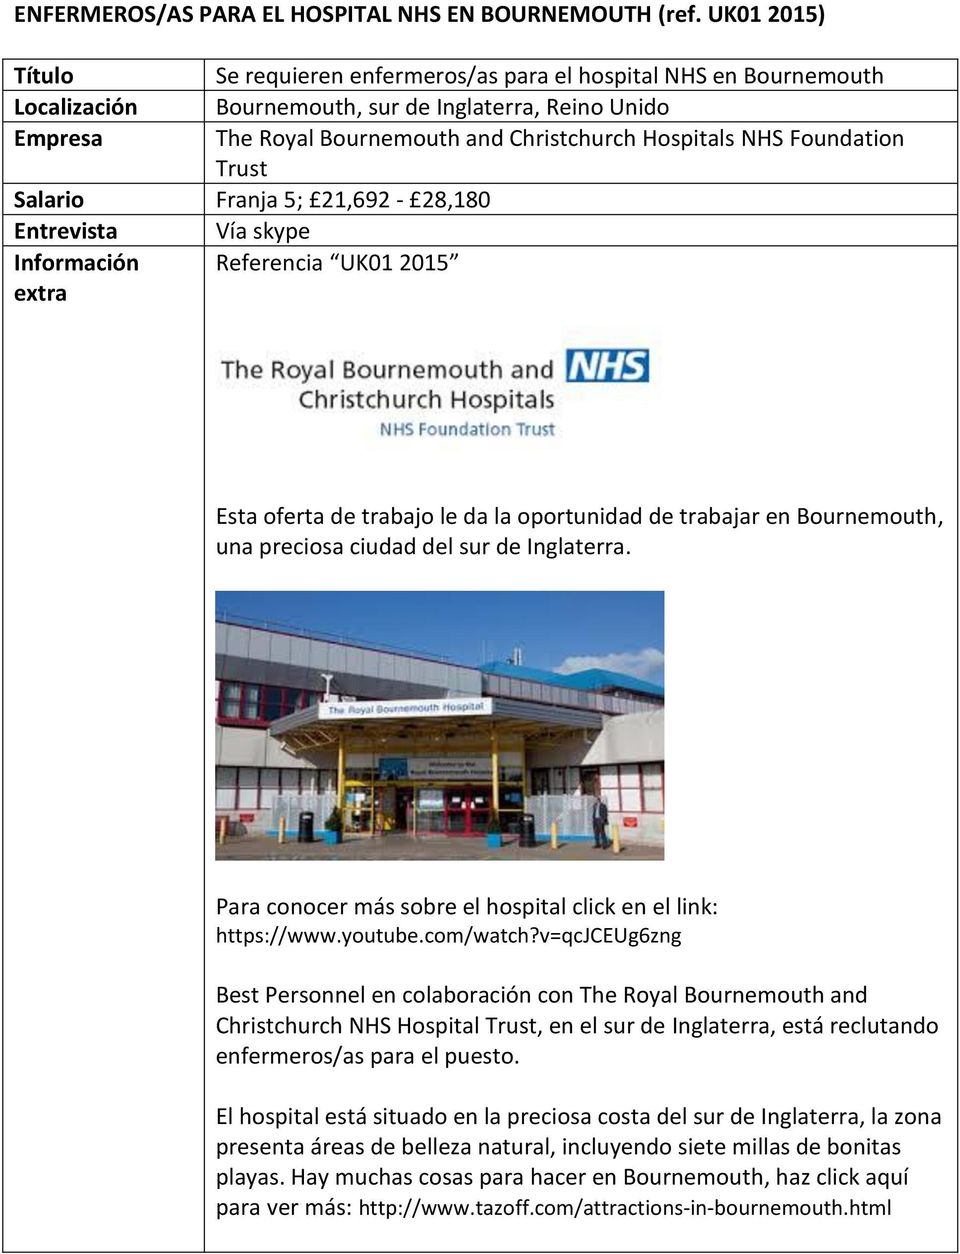 Trust Salario Franja 5; 21,692-28,180 Entrevista Vía skype Información Referencia UK01 2015 Esta oferta de trabajo le da la oportunidad de trabajar en Bournemouth, una preciosa ciudad del sur de